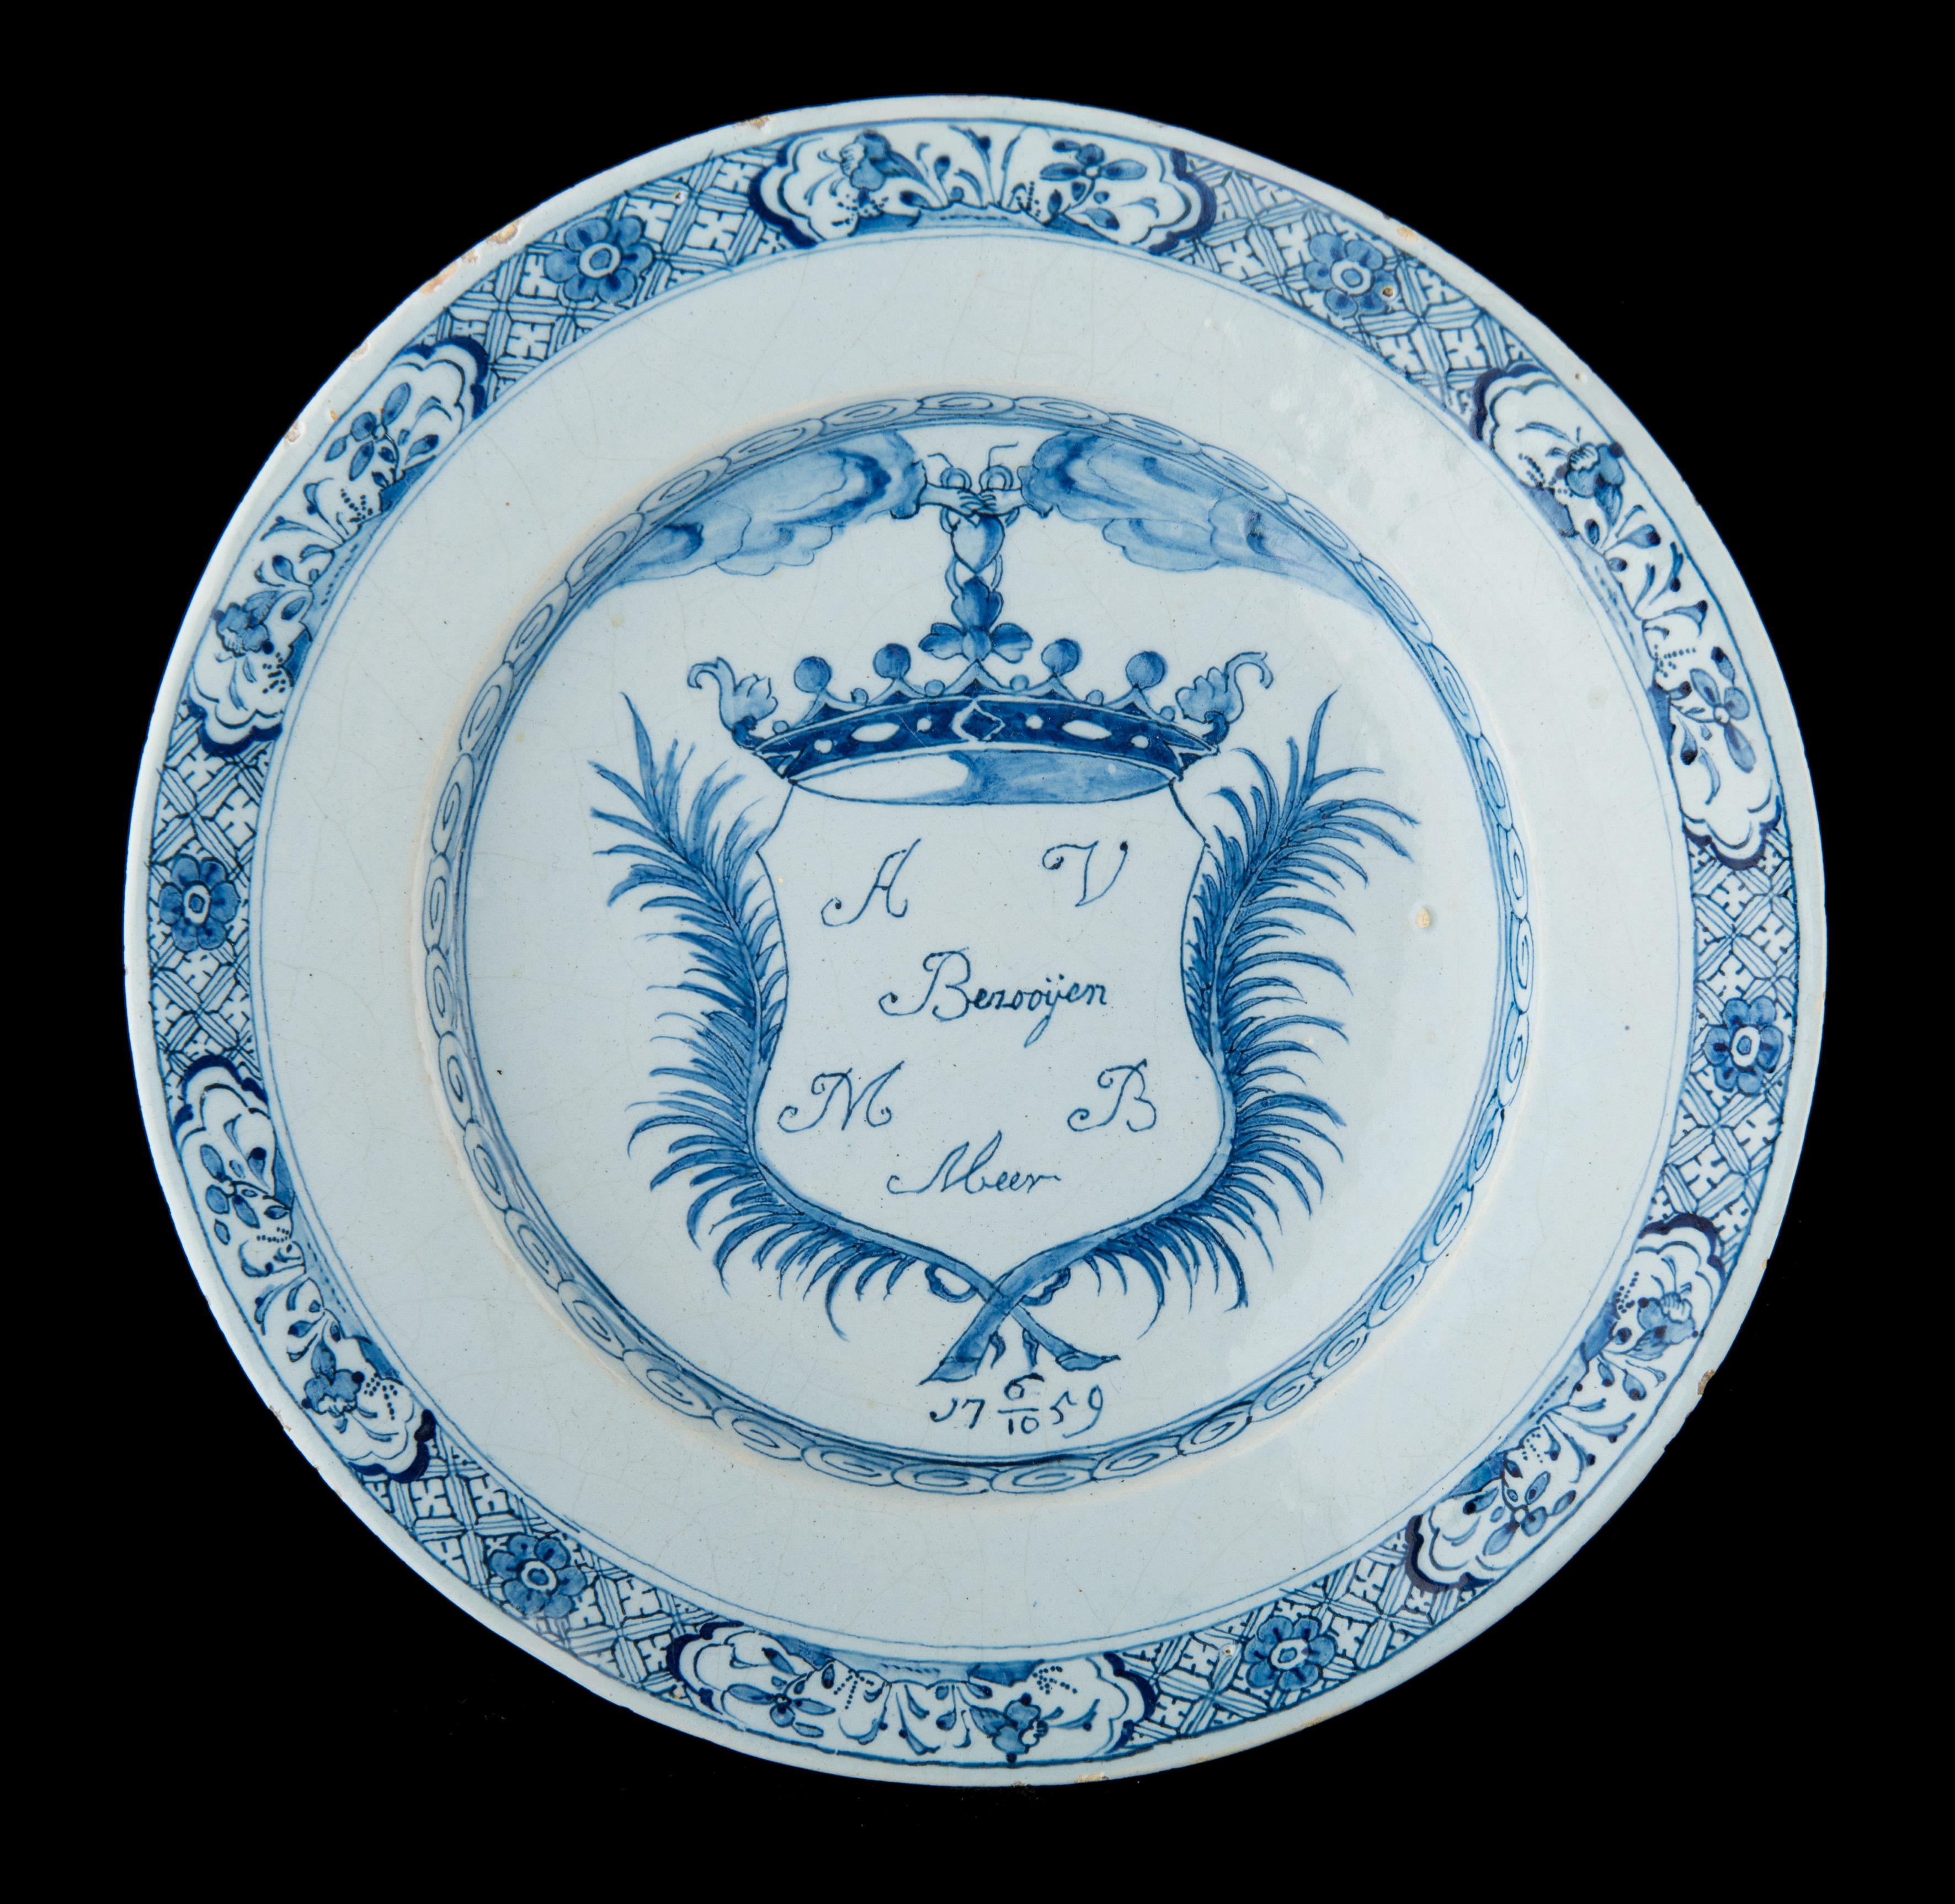 Assiette de mariage bleue et blanche. Delft, daté de 1759

La plaque de mariage est peinte en bleu avec un bouclier couronné entre deux couronnes de laurier. Le bouclier est suspendu à un cœur tenu par deux mains émergeant de nuages de part et